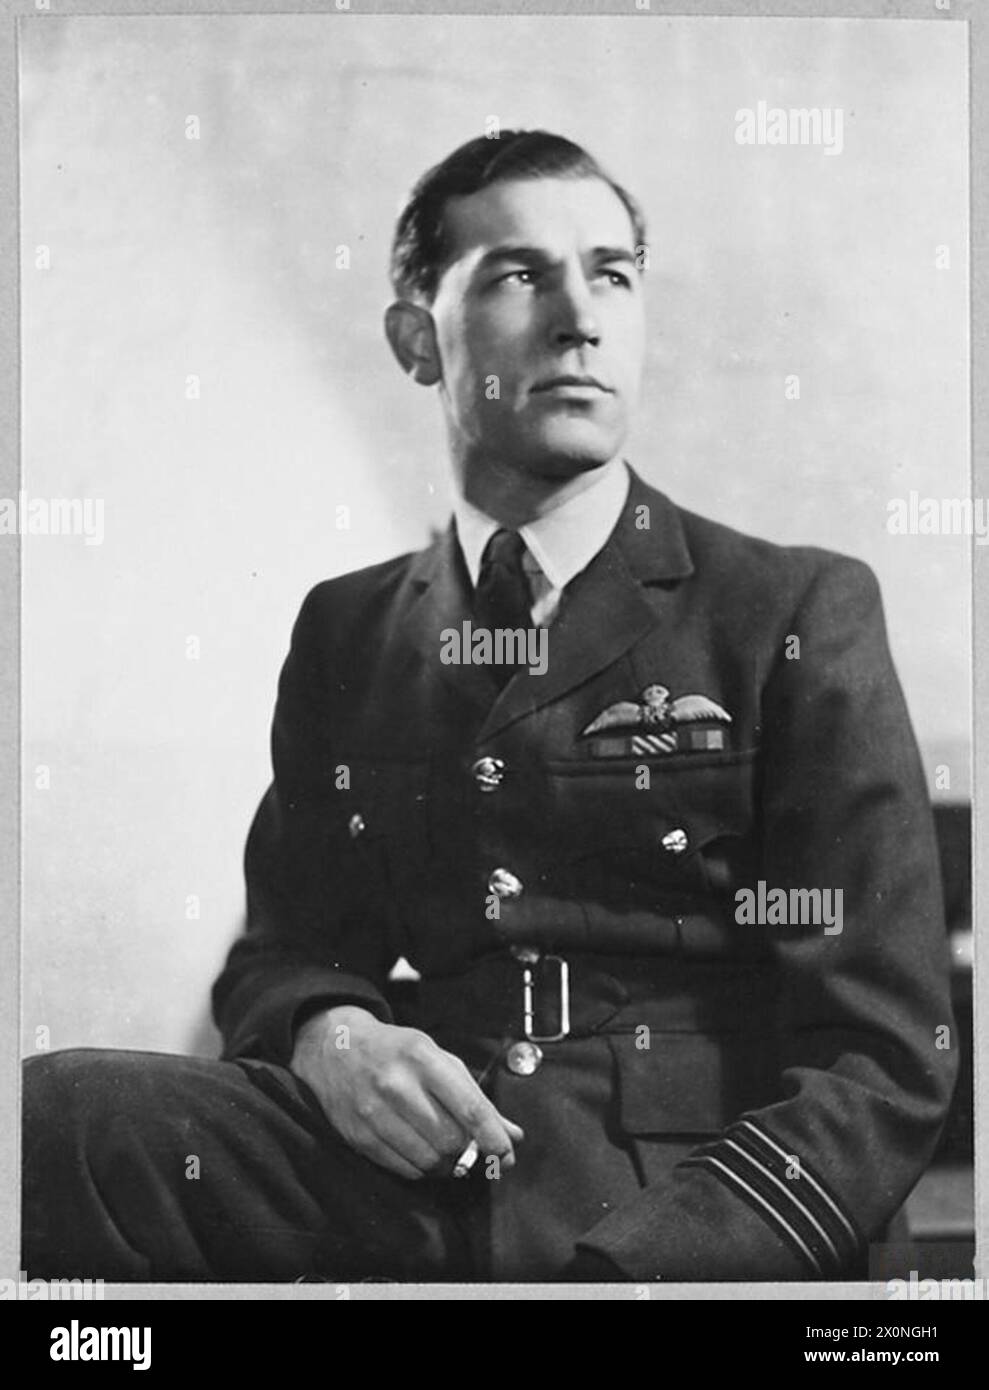 WING COMMANDER G.H.D EVANS, DSO., DFC. Wing Commander George Howard David Evans, der an der Whitgift School in Croydon ausgebildet wurde, war 1936 Kadett in Cranwell und wurde ein Jahr später in Auftrag gegeben 1945. Im April 1943 wurde er mit dem D.F.C. ausgezeichnet. Er verfügt über eine hervorragende Bilanz von Anti-Schifffahrt-Streiks und hat wertvolle fotografische Aufklärungsflüge durchgeführt. Im Oktober 1943 erhielt er den D.S.O. Er ist 27 Jahre alt und ist Wing Commander [Training] beim R.A.F. Coastal Command. Fotografisches negativ, Royal Air Force Stockfoto